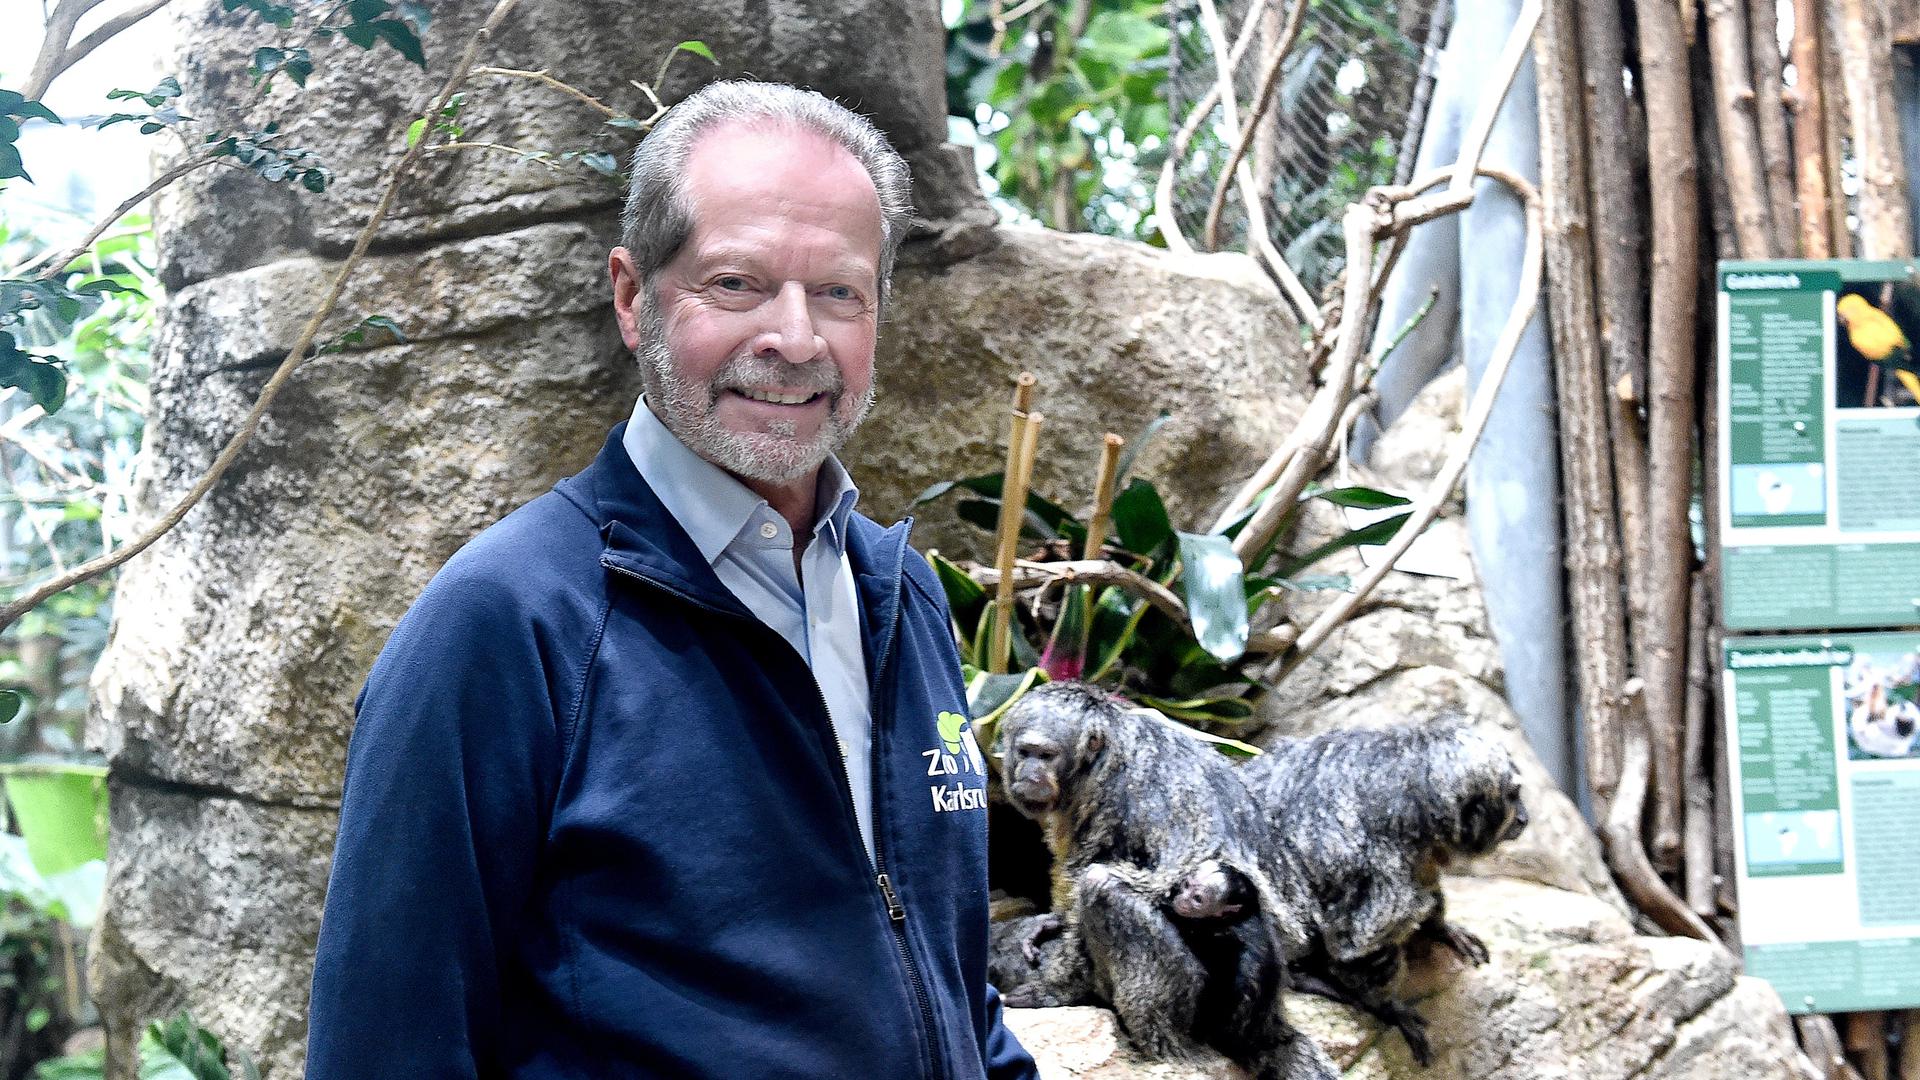 Offiziell geht Clemens Becker (hier mit Weißkopf-Sakis im Exotenhaus) zum Jahresende in den Ruhestand. Dennoch bleibt er dem Zoo erhalten, denn er ist gemeinsam mit Zoodirektor Matthias Reinschmidt Vorsitzender der überaus aktiven Artenschutzstiftung. 